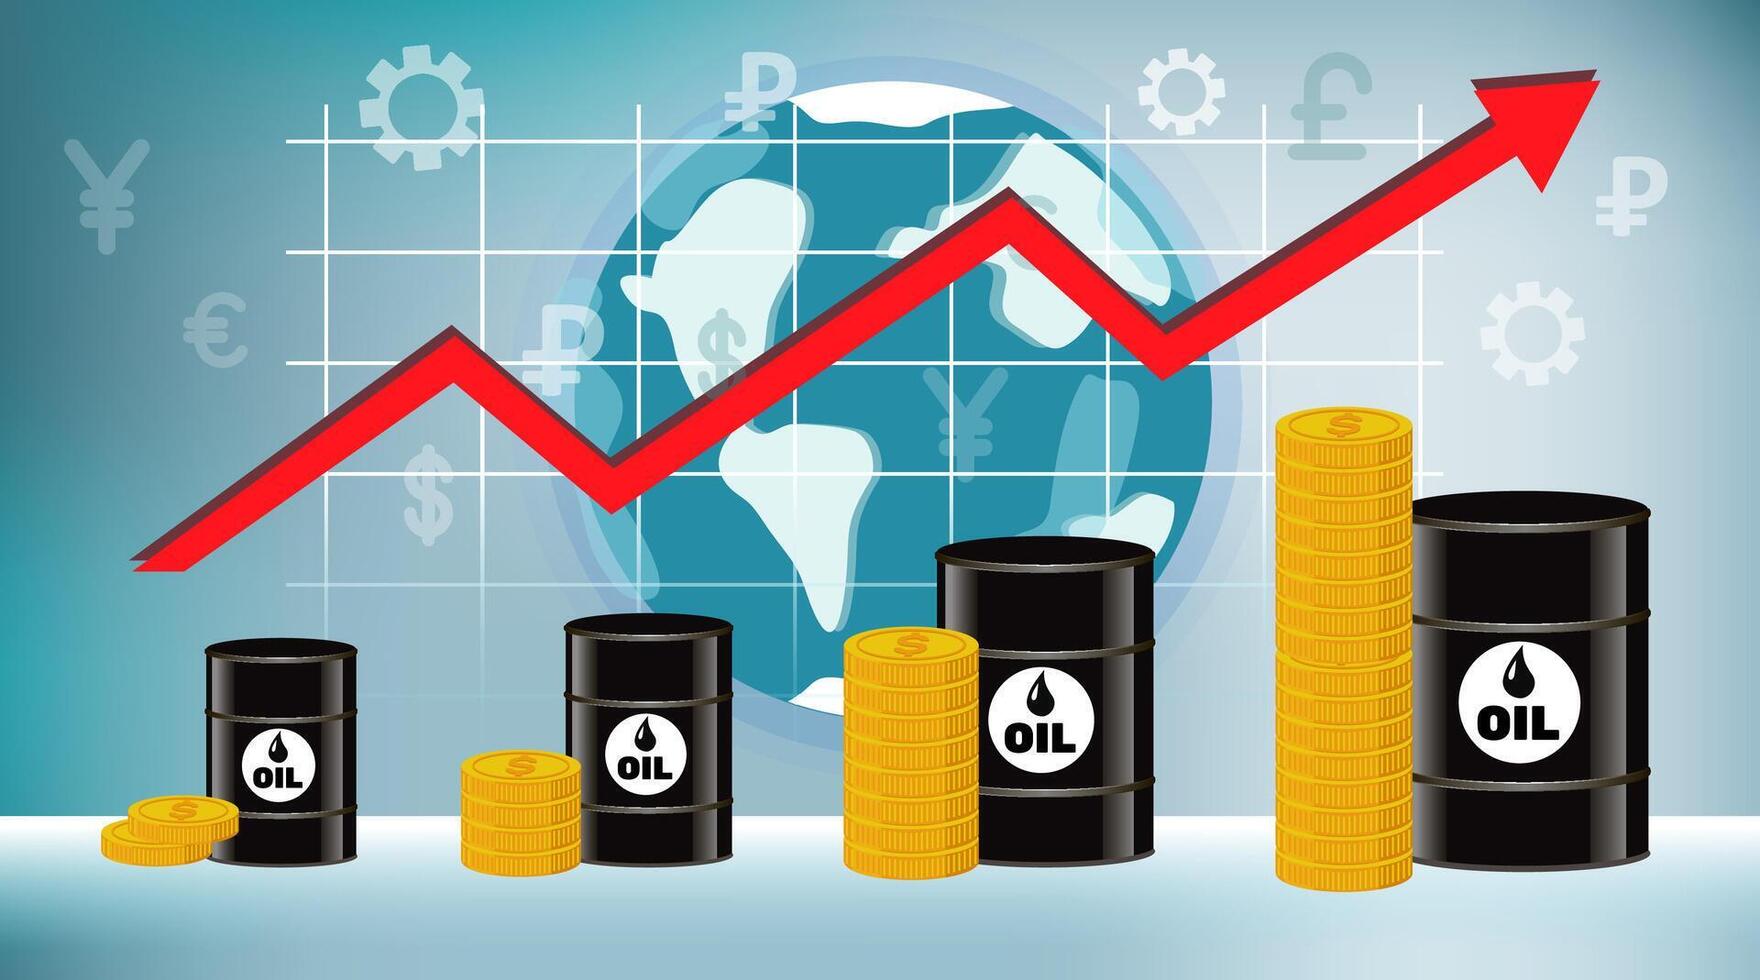 de prijs van olie is stijgende lijn. vaten van olie, geld en infographics tegen de achtergrond van de wereldbol en wereld valuta's. illustratie, concept Aan een blauw achtergrond. vector